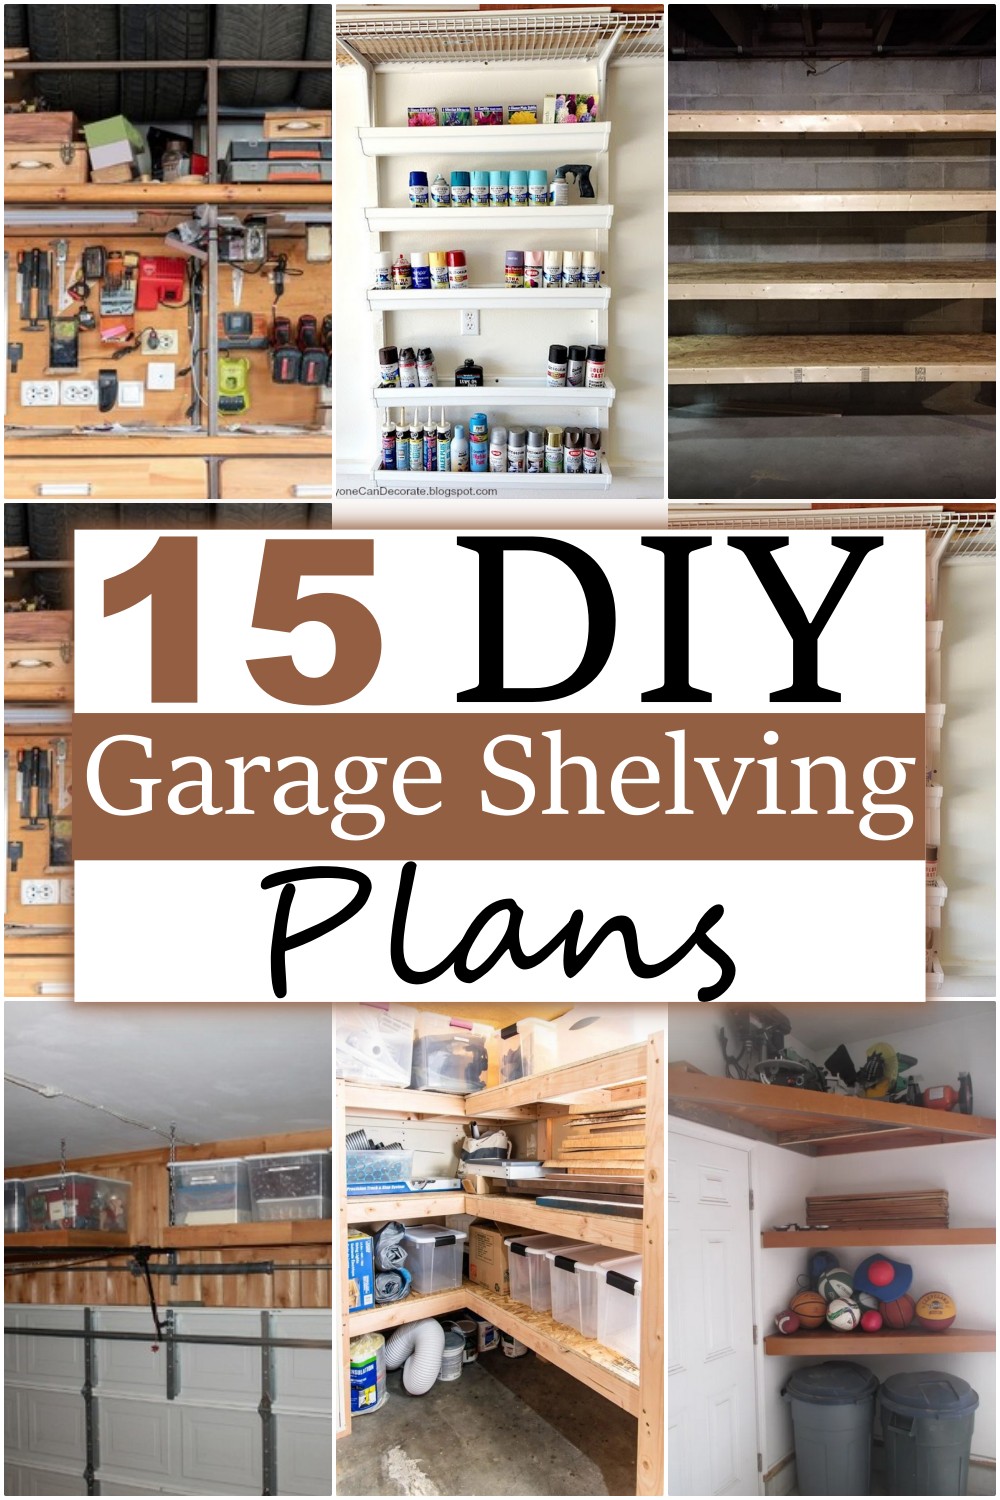 15 DIY Garage Shelving Plans